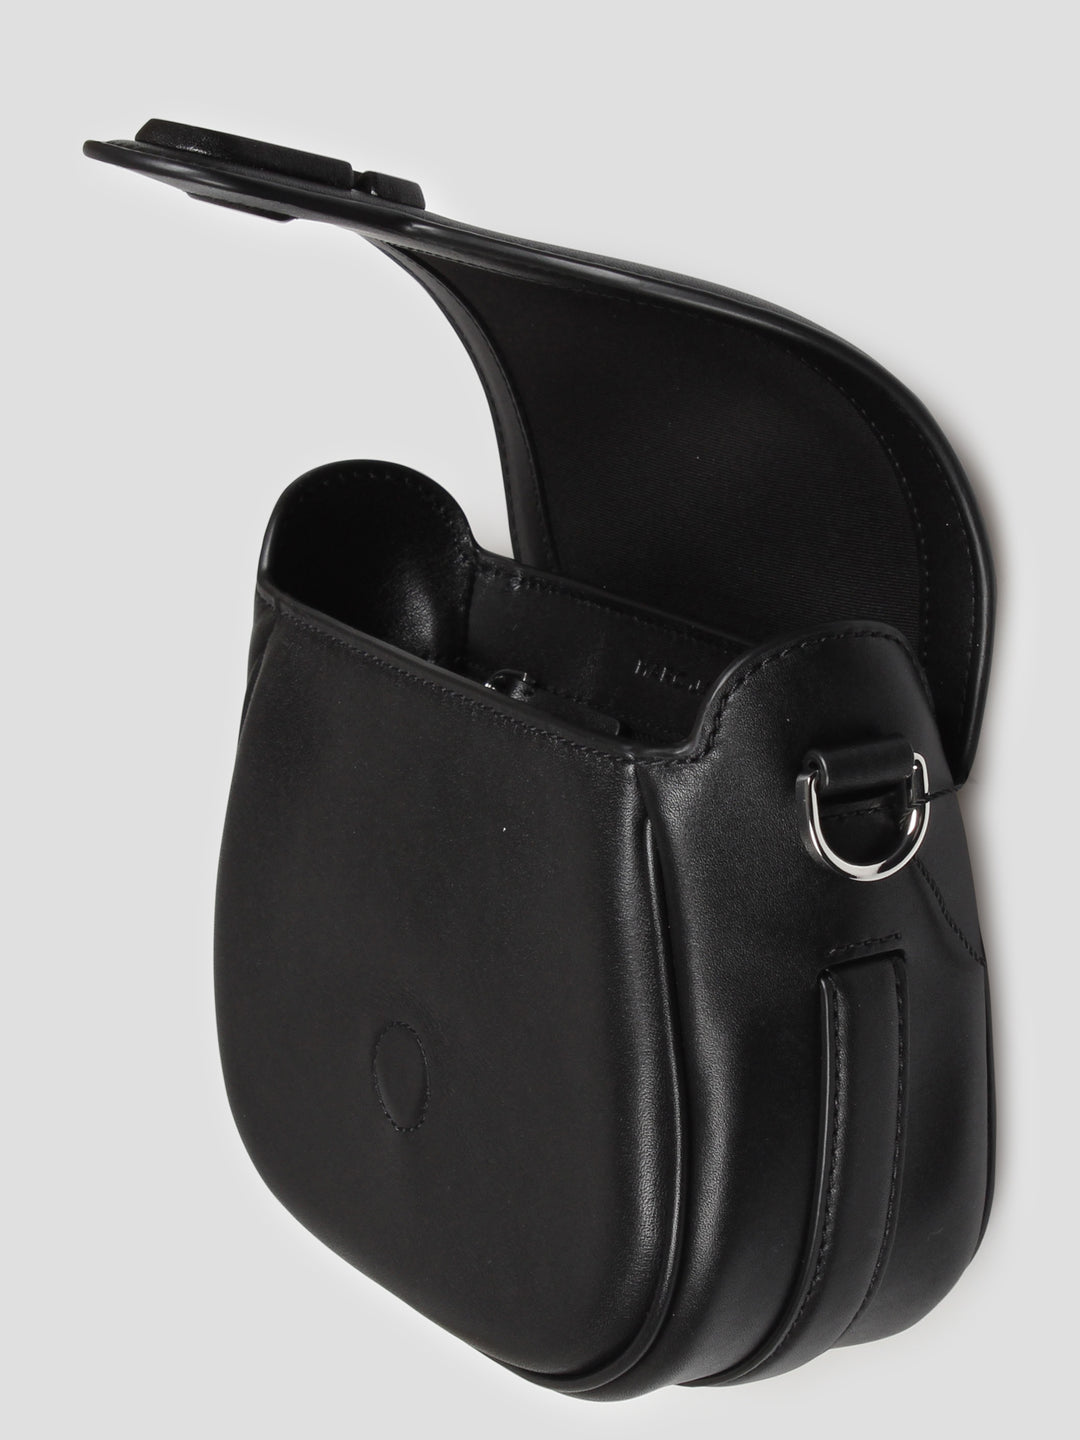 The j marc small saddle bag